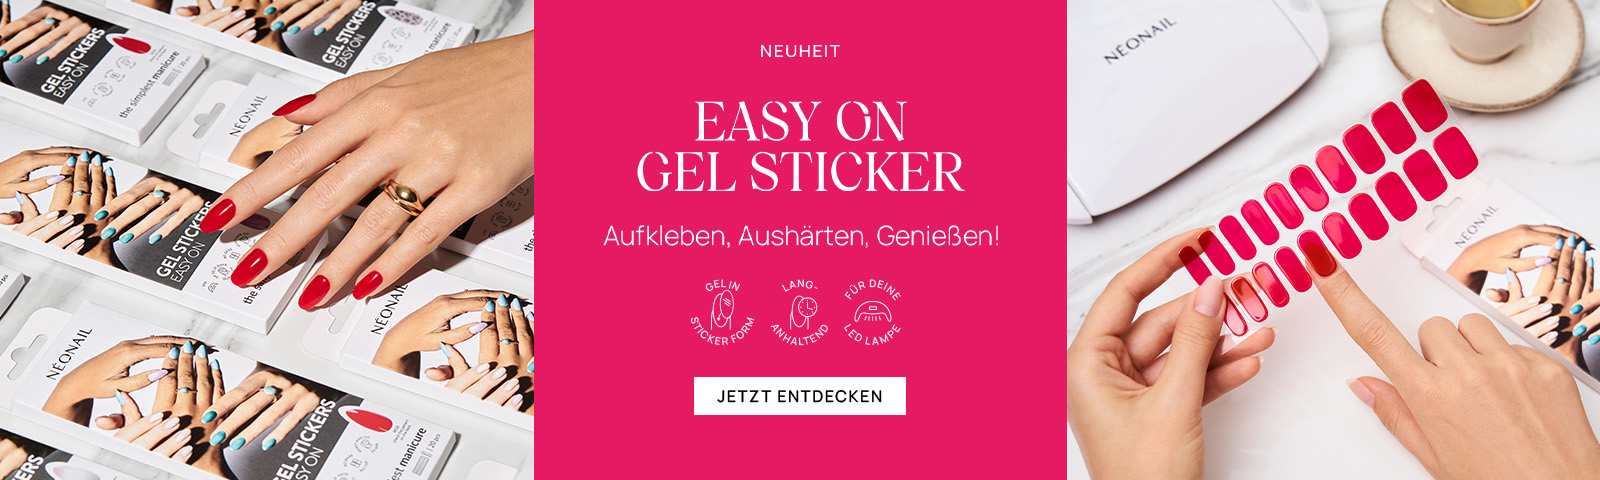 Easy On Gel Stickers - premiera - 30.11  